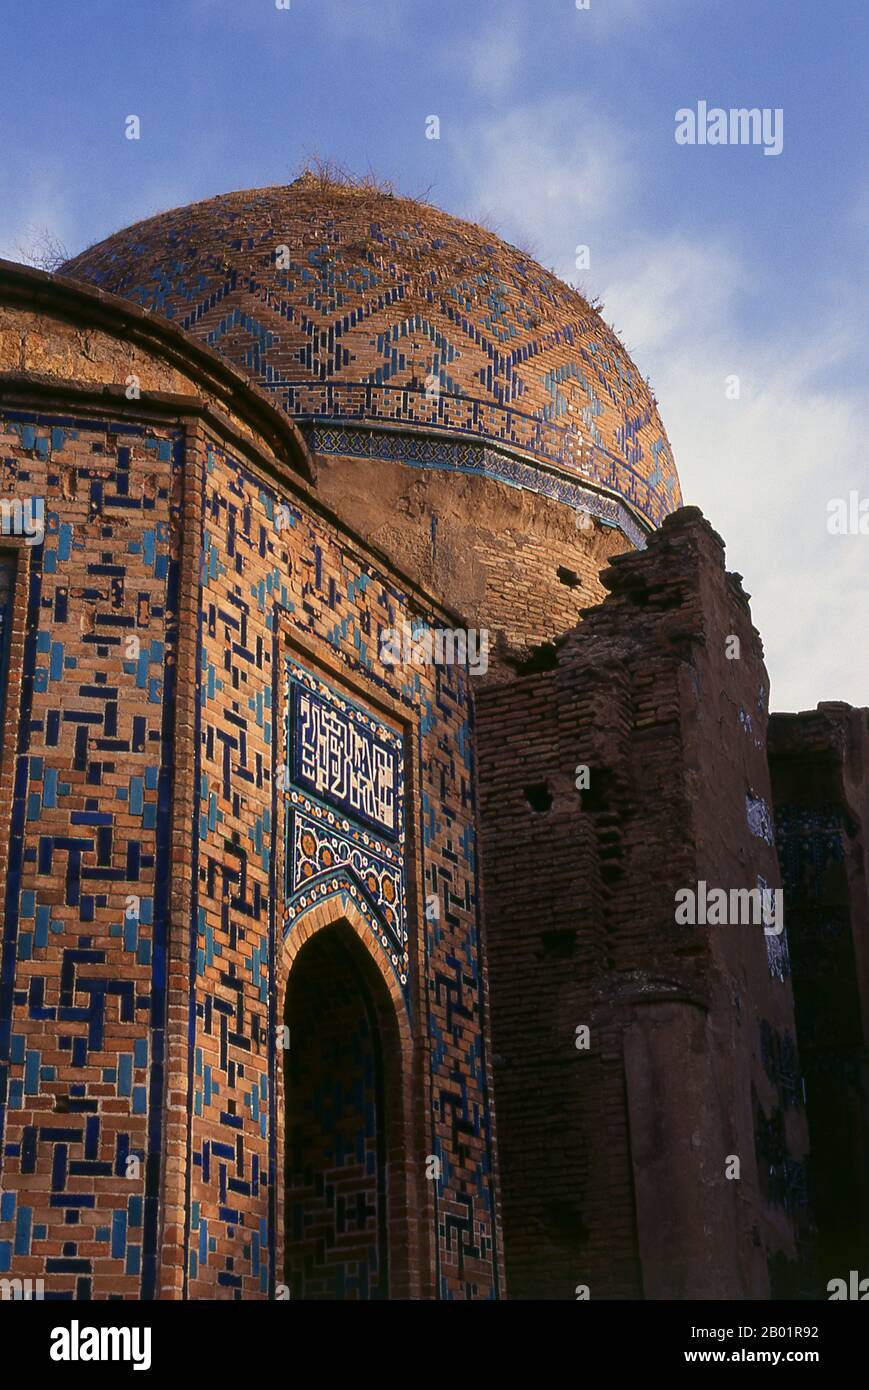 Ouzbékistan : dôme au-dessus de la tombe de Kussam ibn Abbas, Shah-i-Zinda, Samarkand. Shah-i-Zinda (« le Roi vivant ») est une nécropole dans la partie nord-est de Samarkand. L'ensemble Shah-i-Zinda comprend des mausolées et d'autres édifices rituels des 9-14e et 19e siècles. Le nom Shah-i-Zinda est lié à la légende selon laquelle Kusam ibn Abbas, un cousin du prophète Mahomet, est enterré ici. On croit qu'il est venu à Samarkand avec l'invasion arabe au 7e siècle pour prêcher l'Islam. Les légendes populaires disent qu'il a été décapité par des adorateurs du feu zoroastriens pour sa foi. Banque D'Images